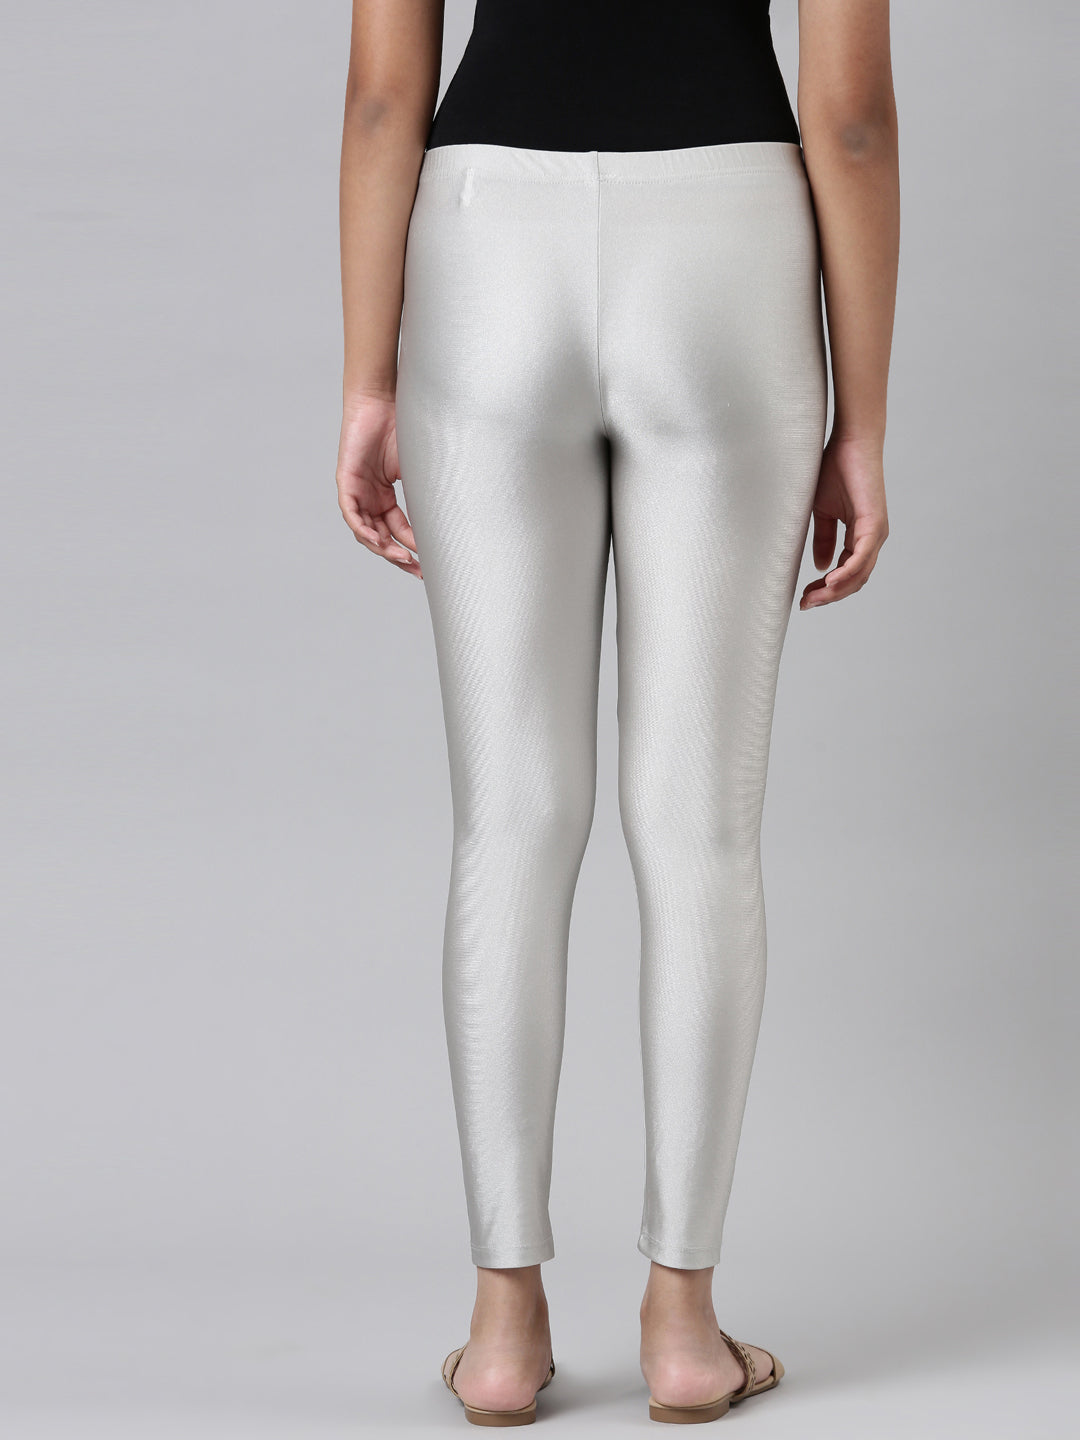 Girls Solid Silver Shimmer Leggings – Cherrypick